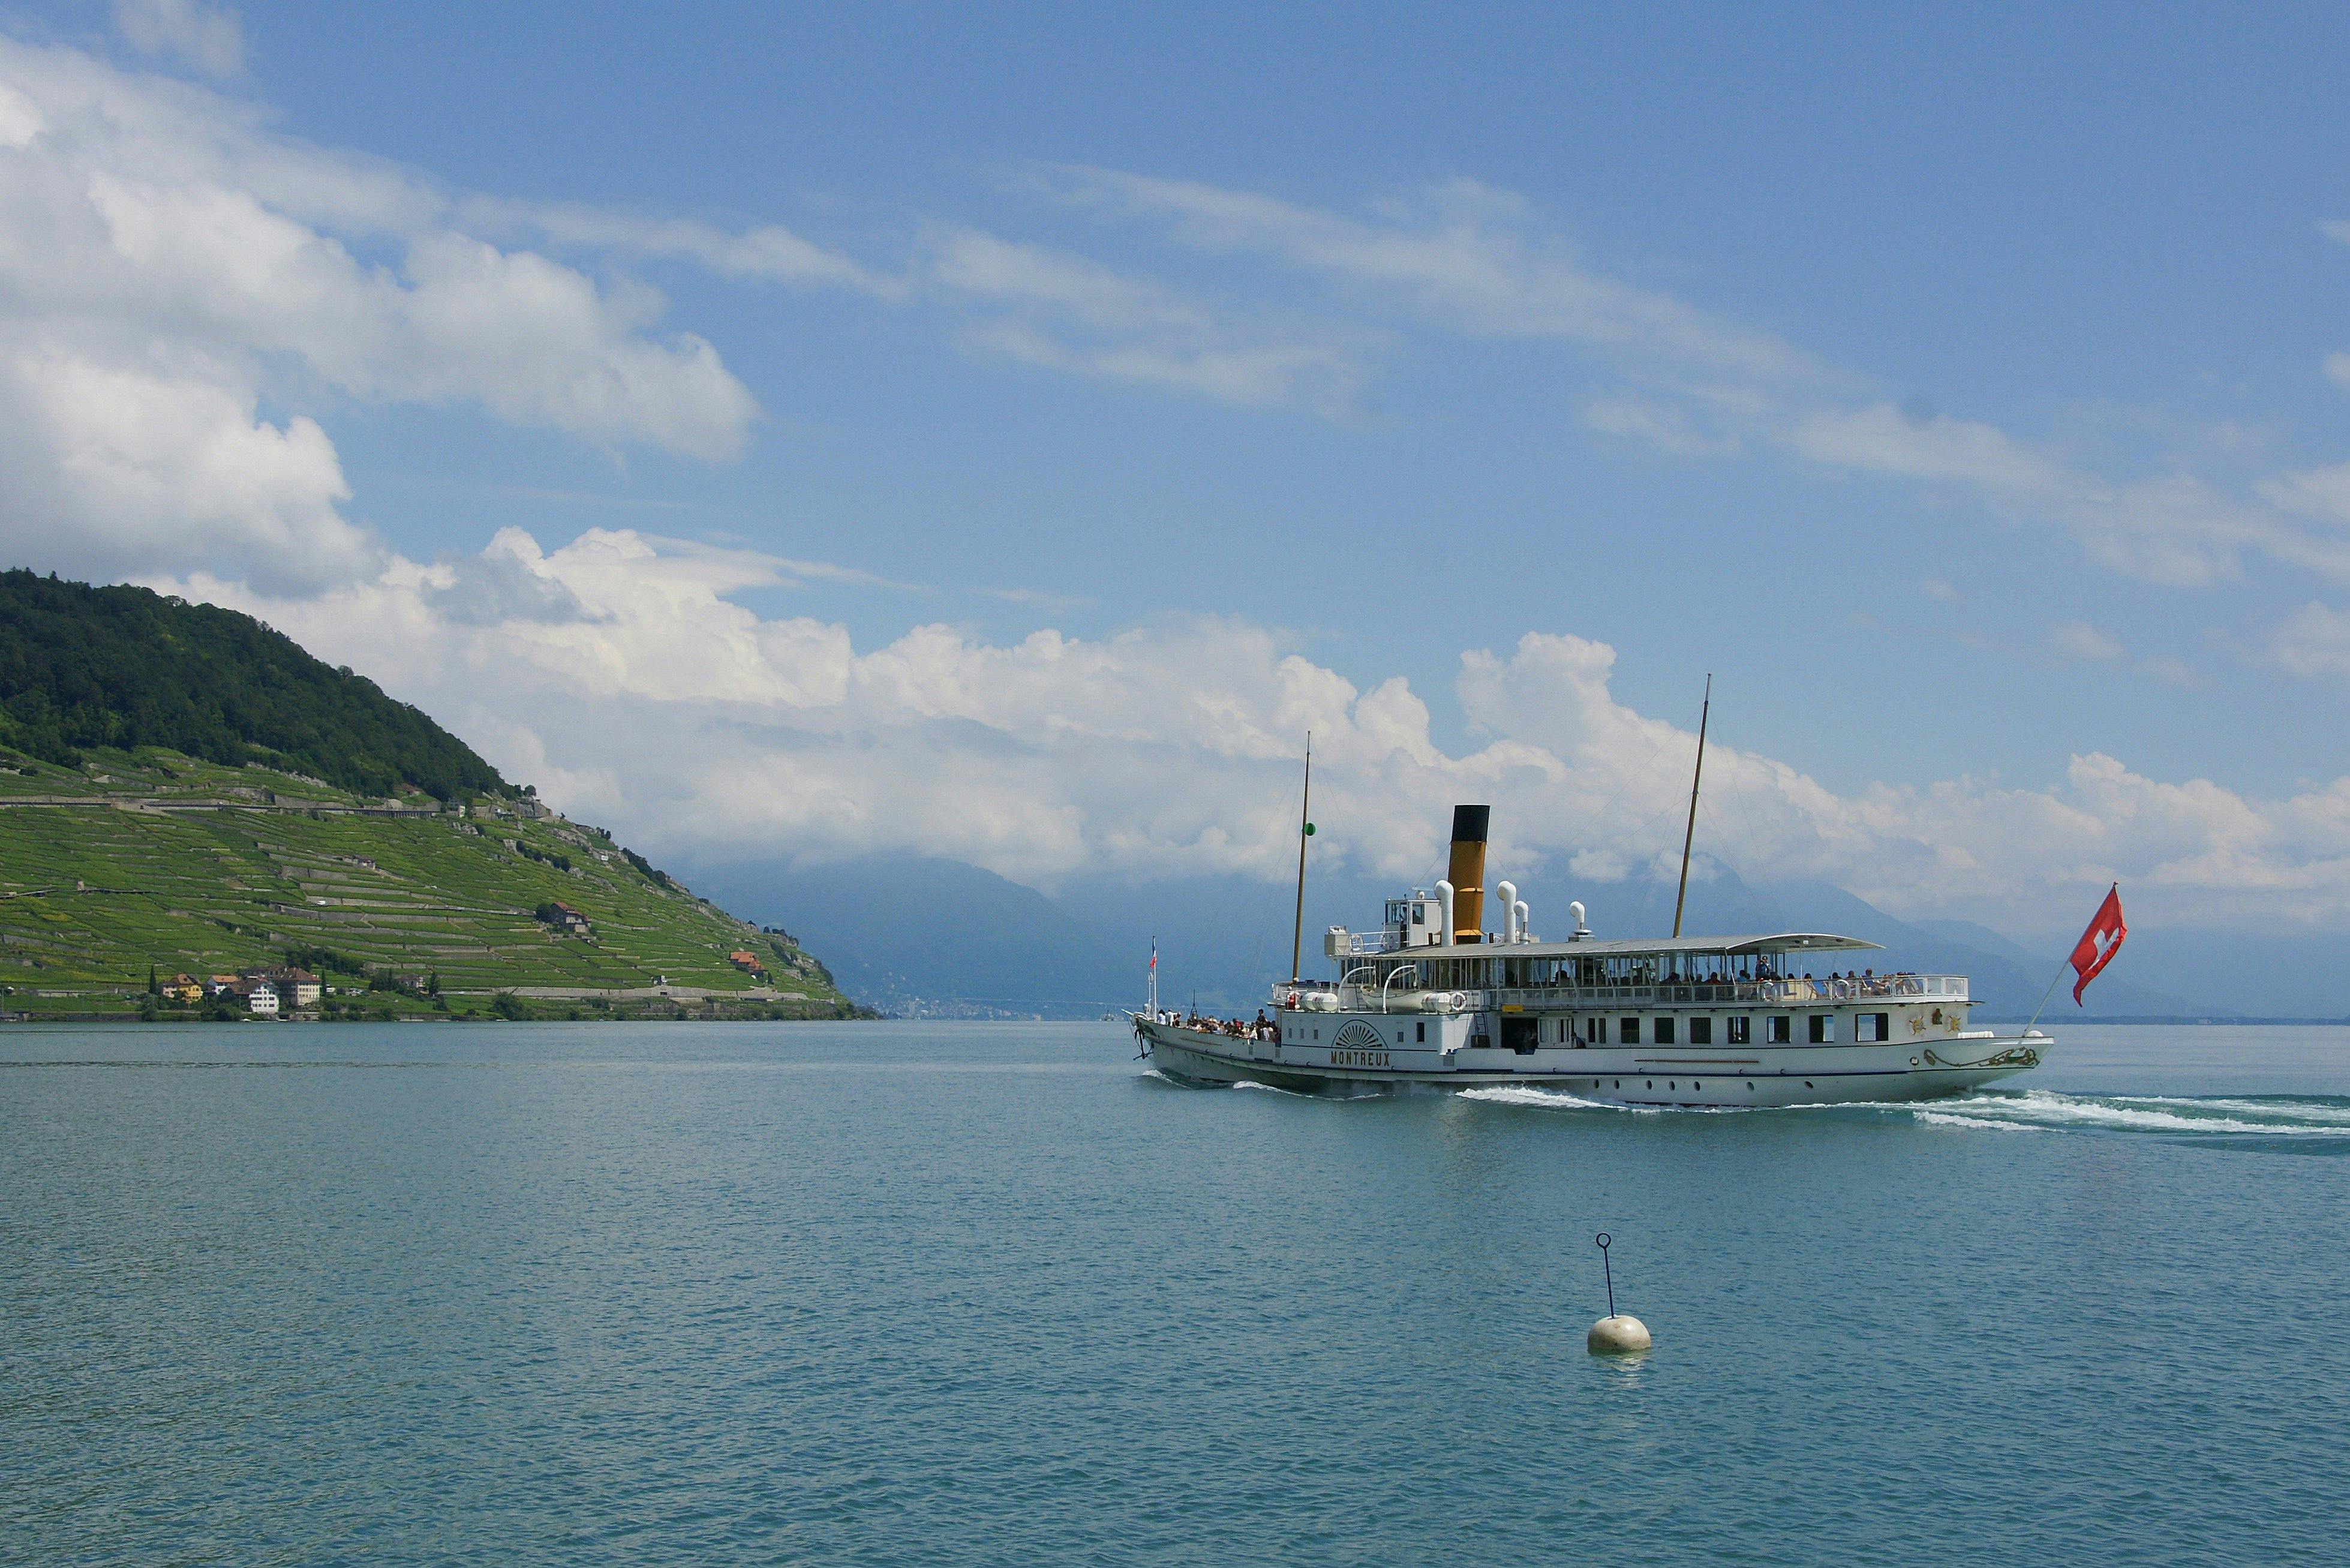 Entdecken Sie die Weinberge von Lavaux und Montreux-Vevey bei einer Bootsfahrt ab Lausanne